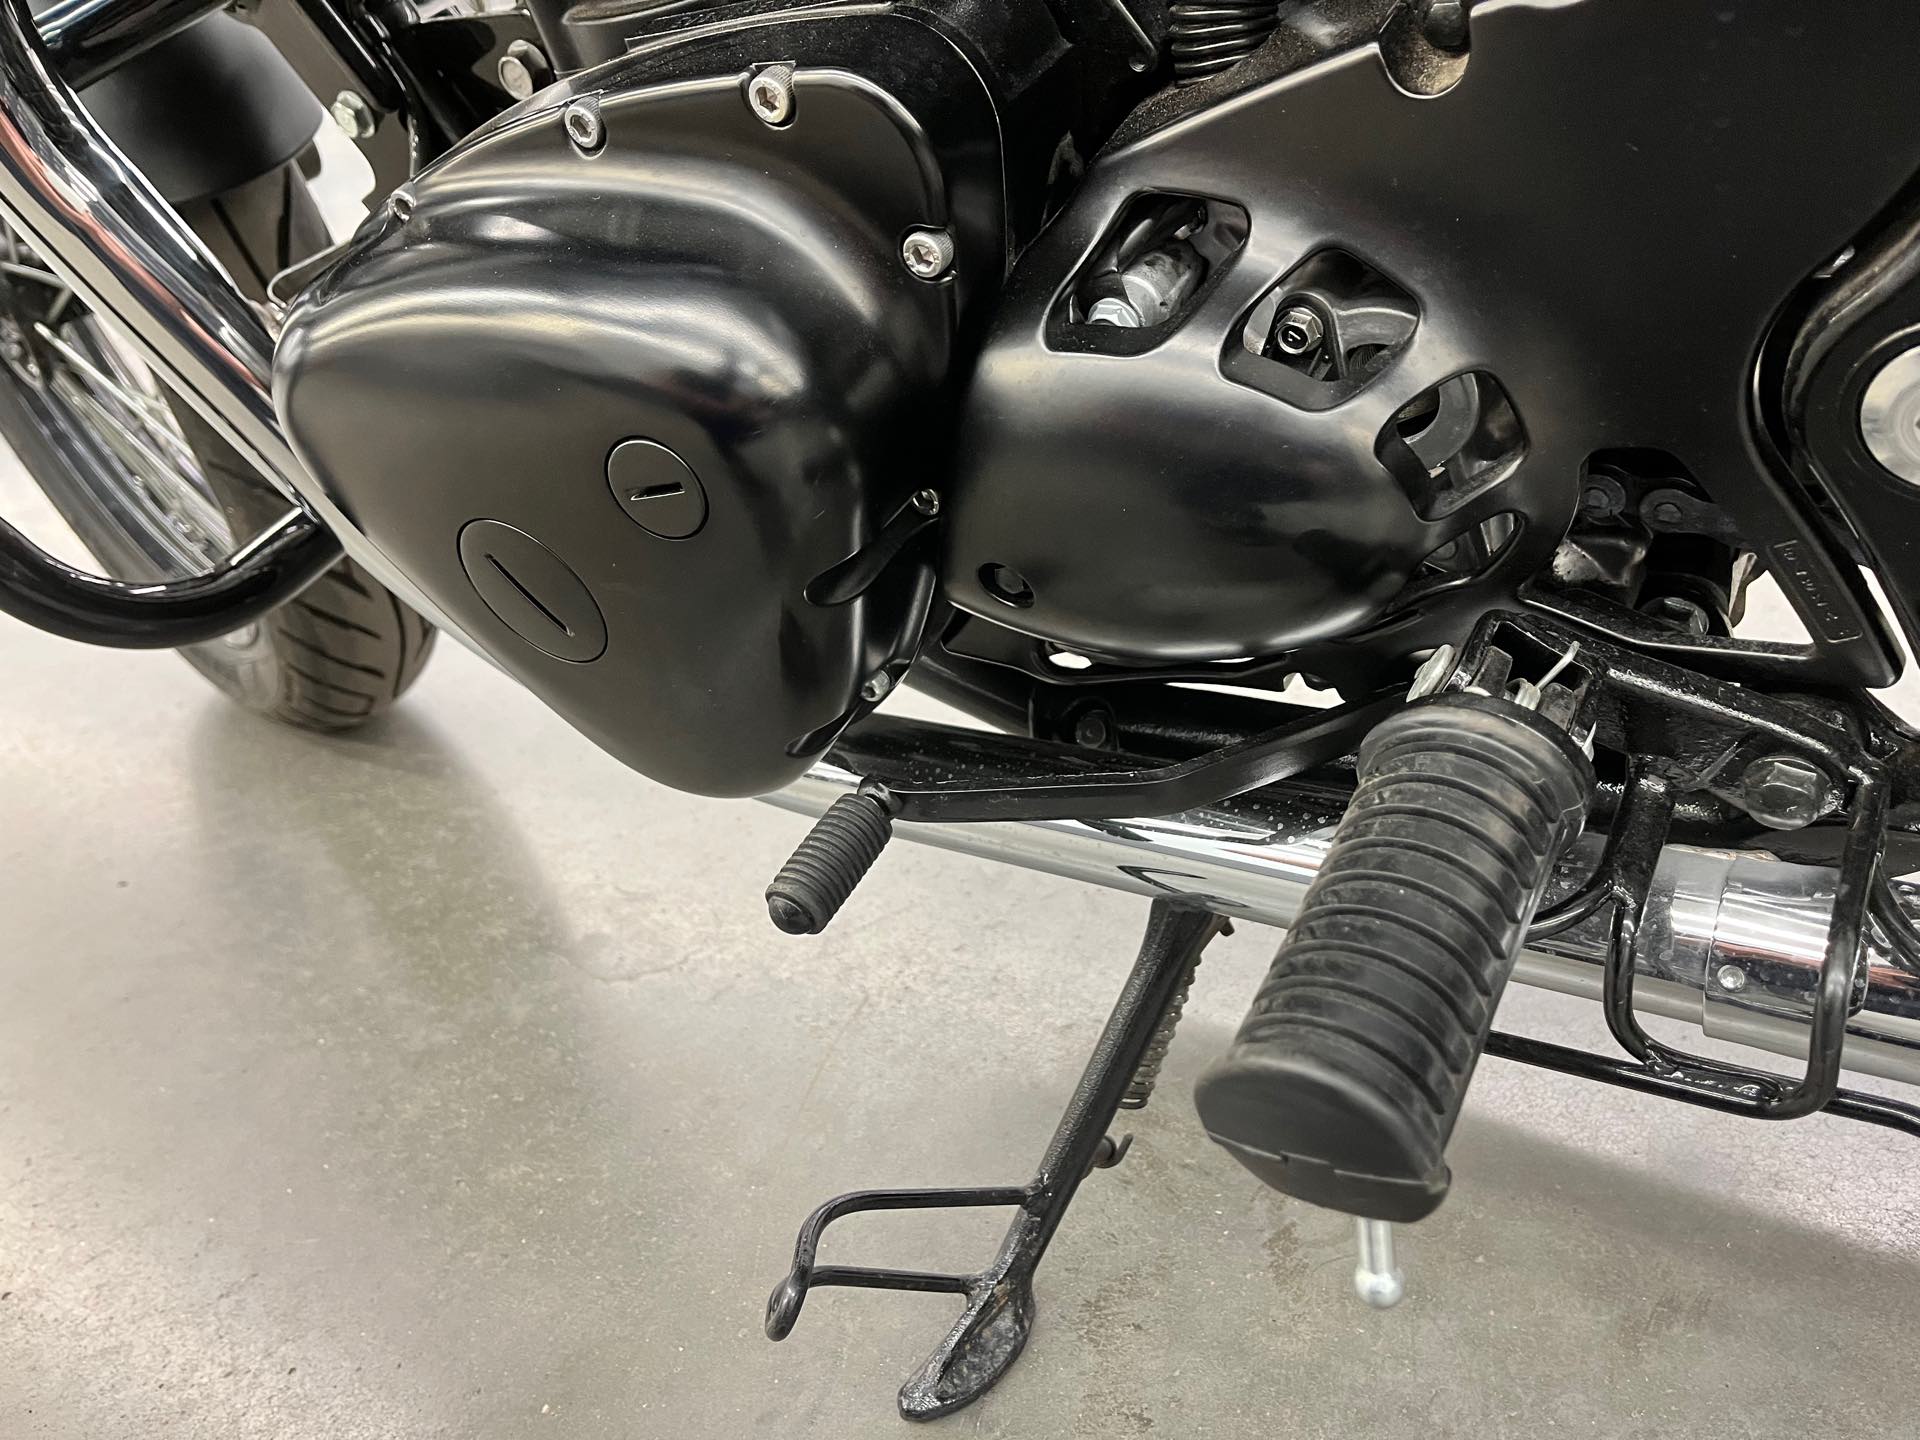 2019 Kawasaki W800 Cafe at Aces Motorcycles - Denver